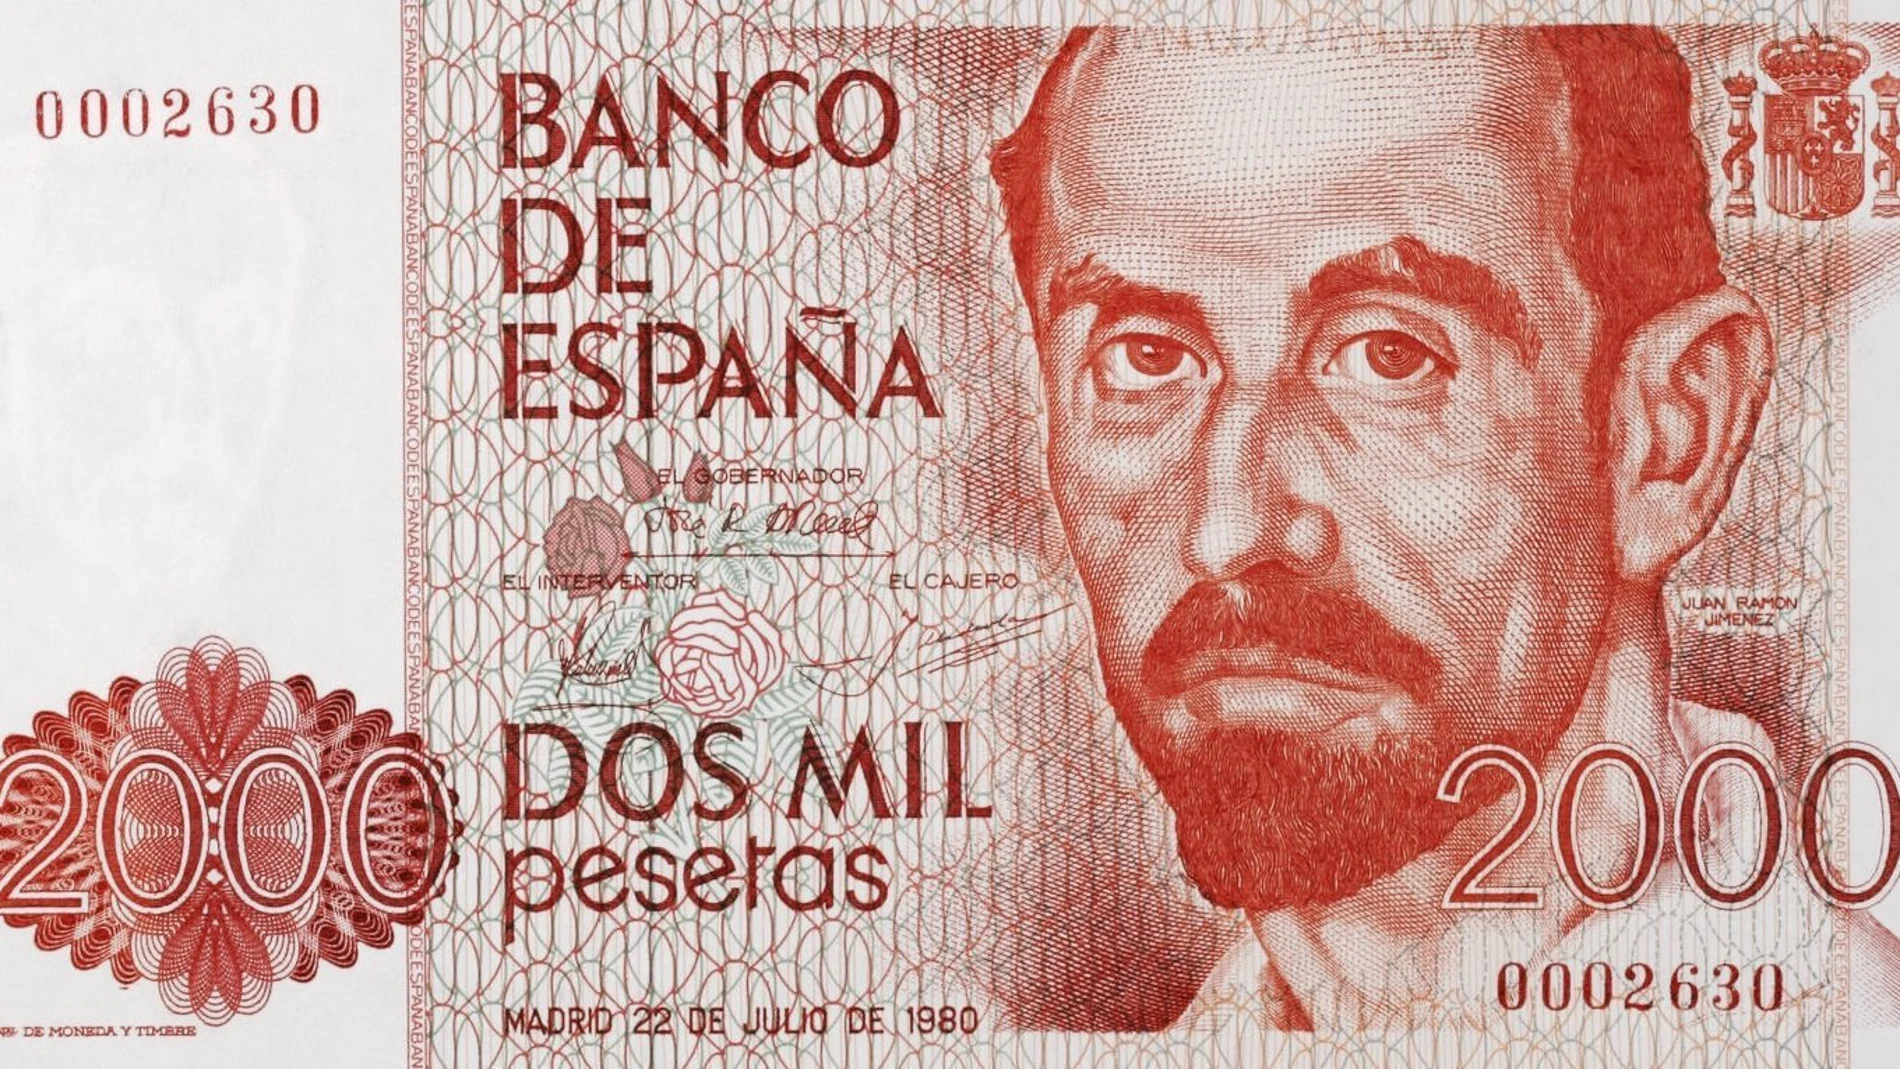 El retrato de Juan Ramón Jiménez por Vázquez Díaz apareció en el billete de 2.000 pesetas